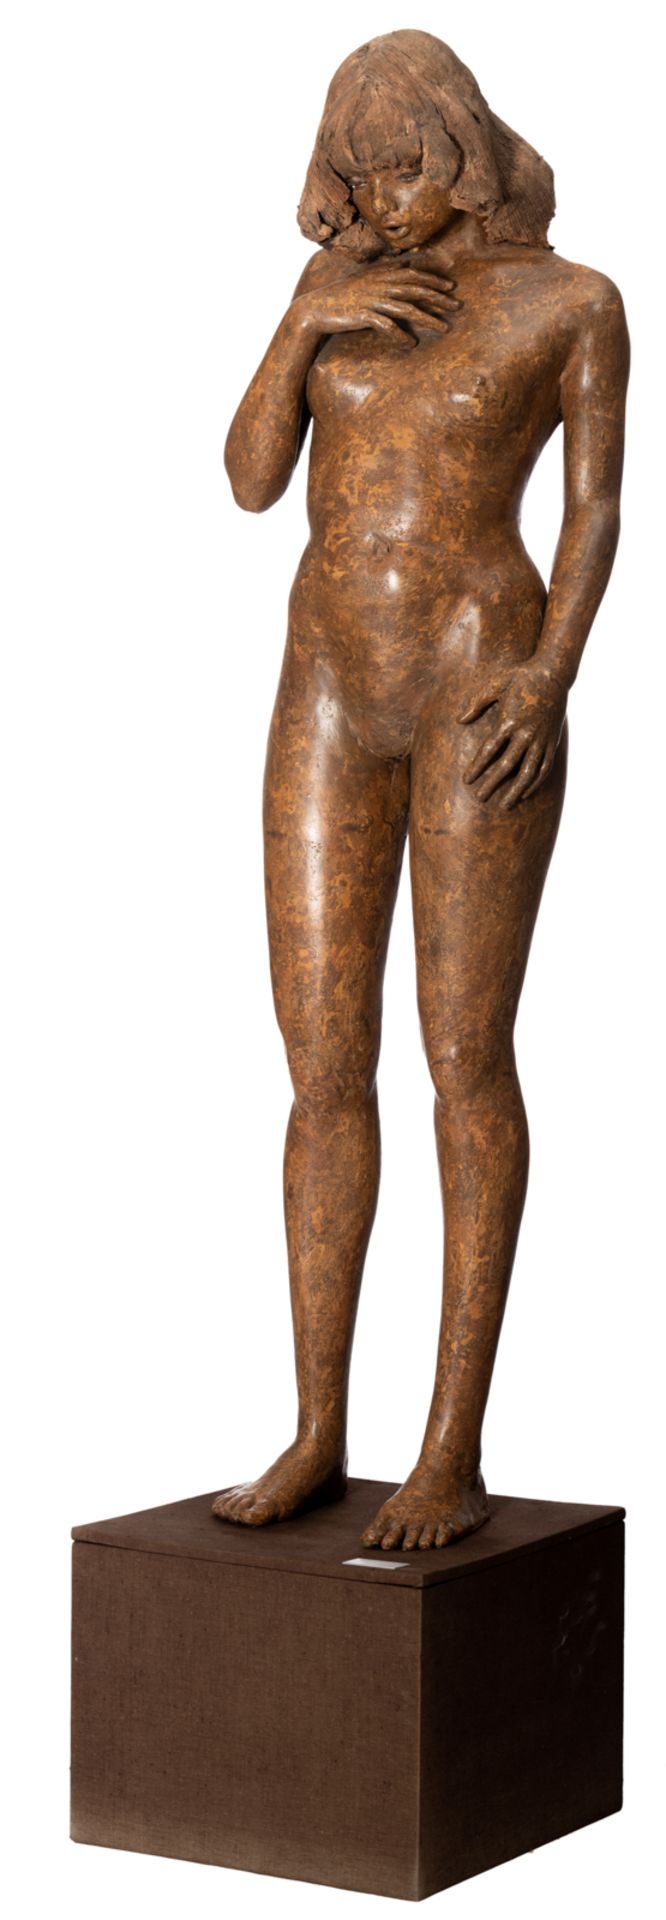 Dumortier J., 'Een pose is bevrijding van wat je bent', a patinated terracotta sculpture of a naked